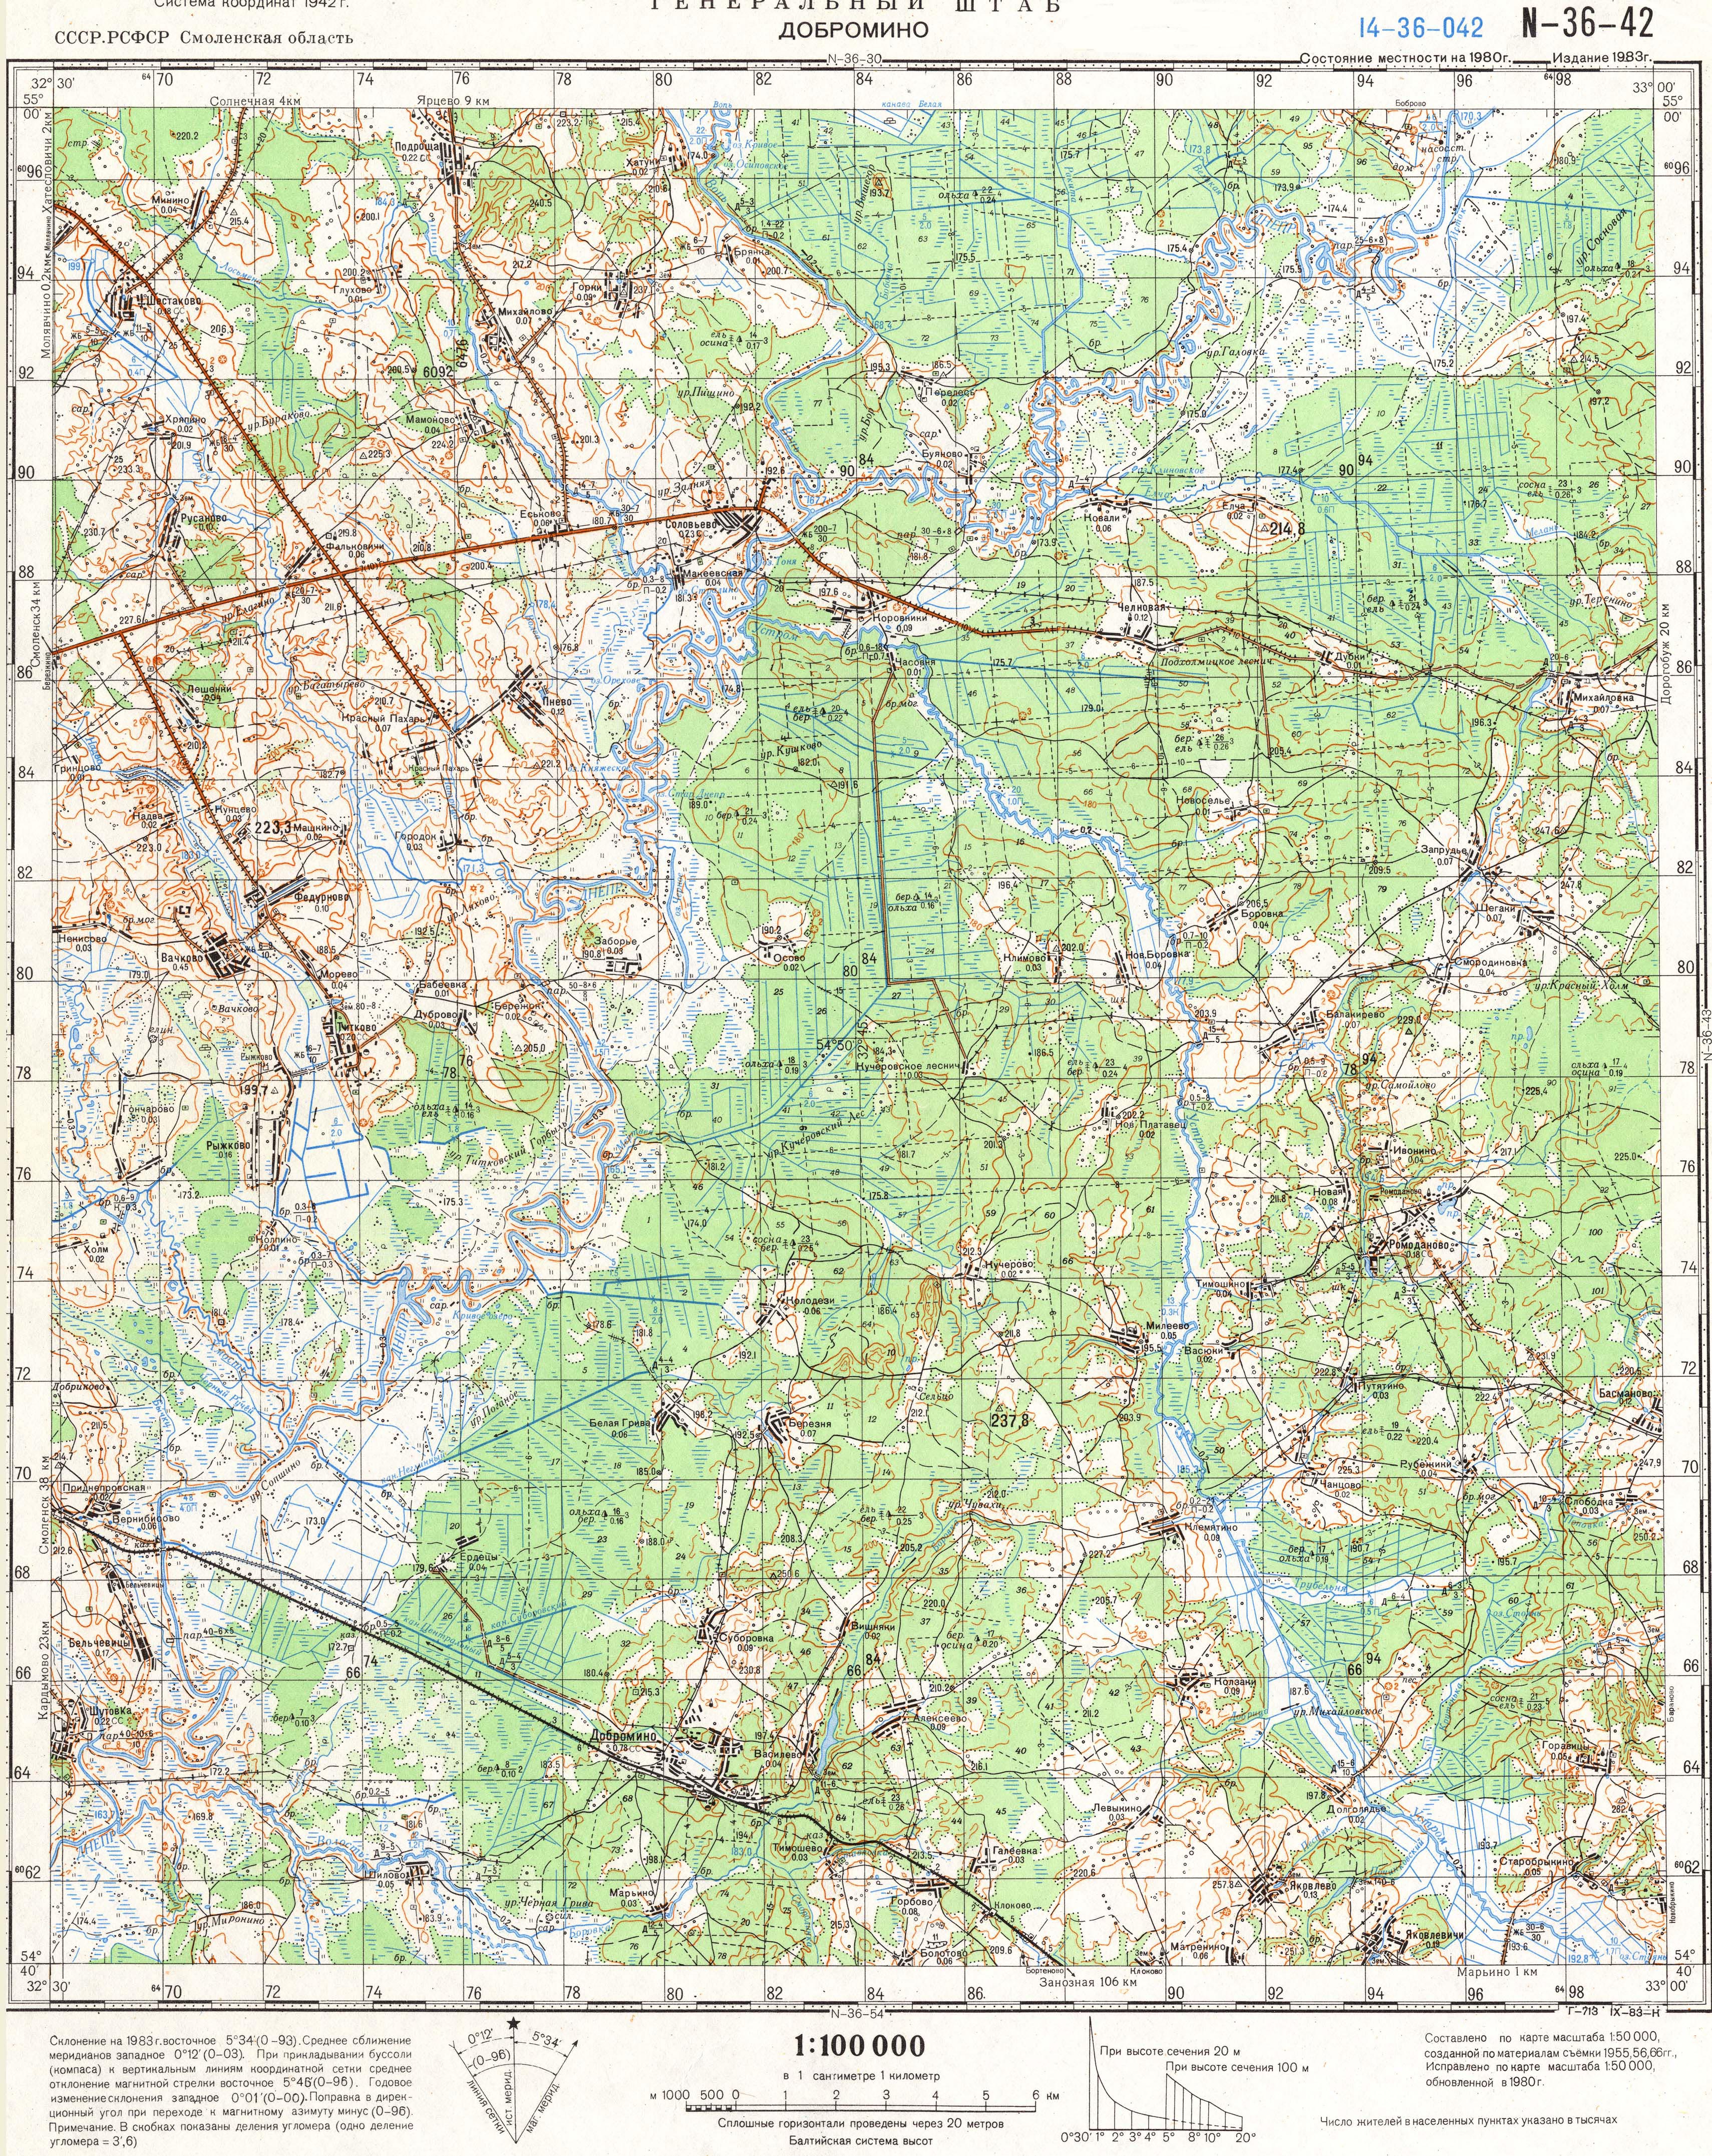 Топографические карты Генштаба / Карты листа N-36 (Смоленск) / Карты масштаба 1:100000 (километровки) / Лист N-36-42, Добромино